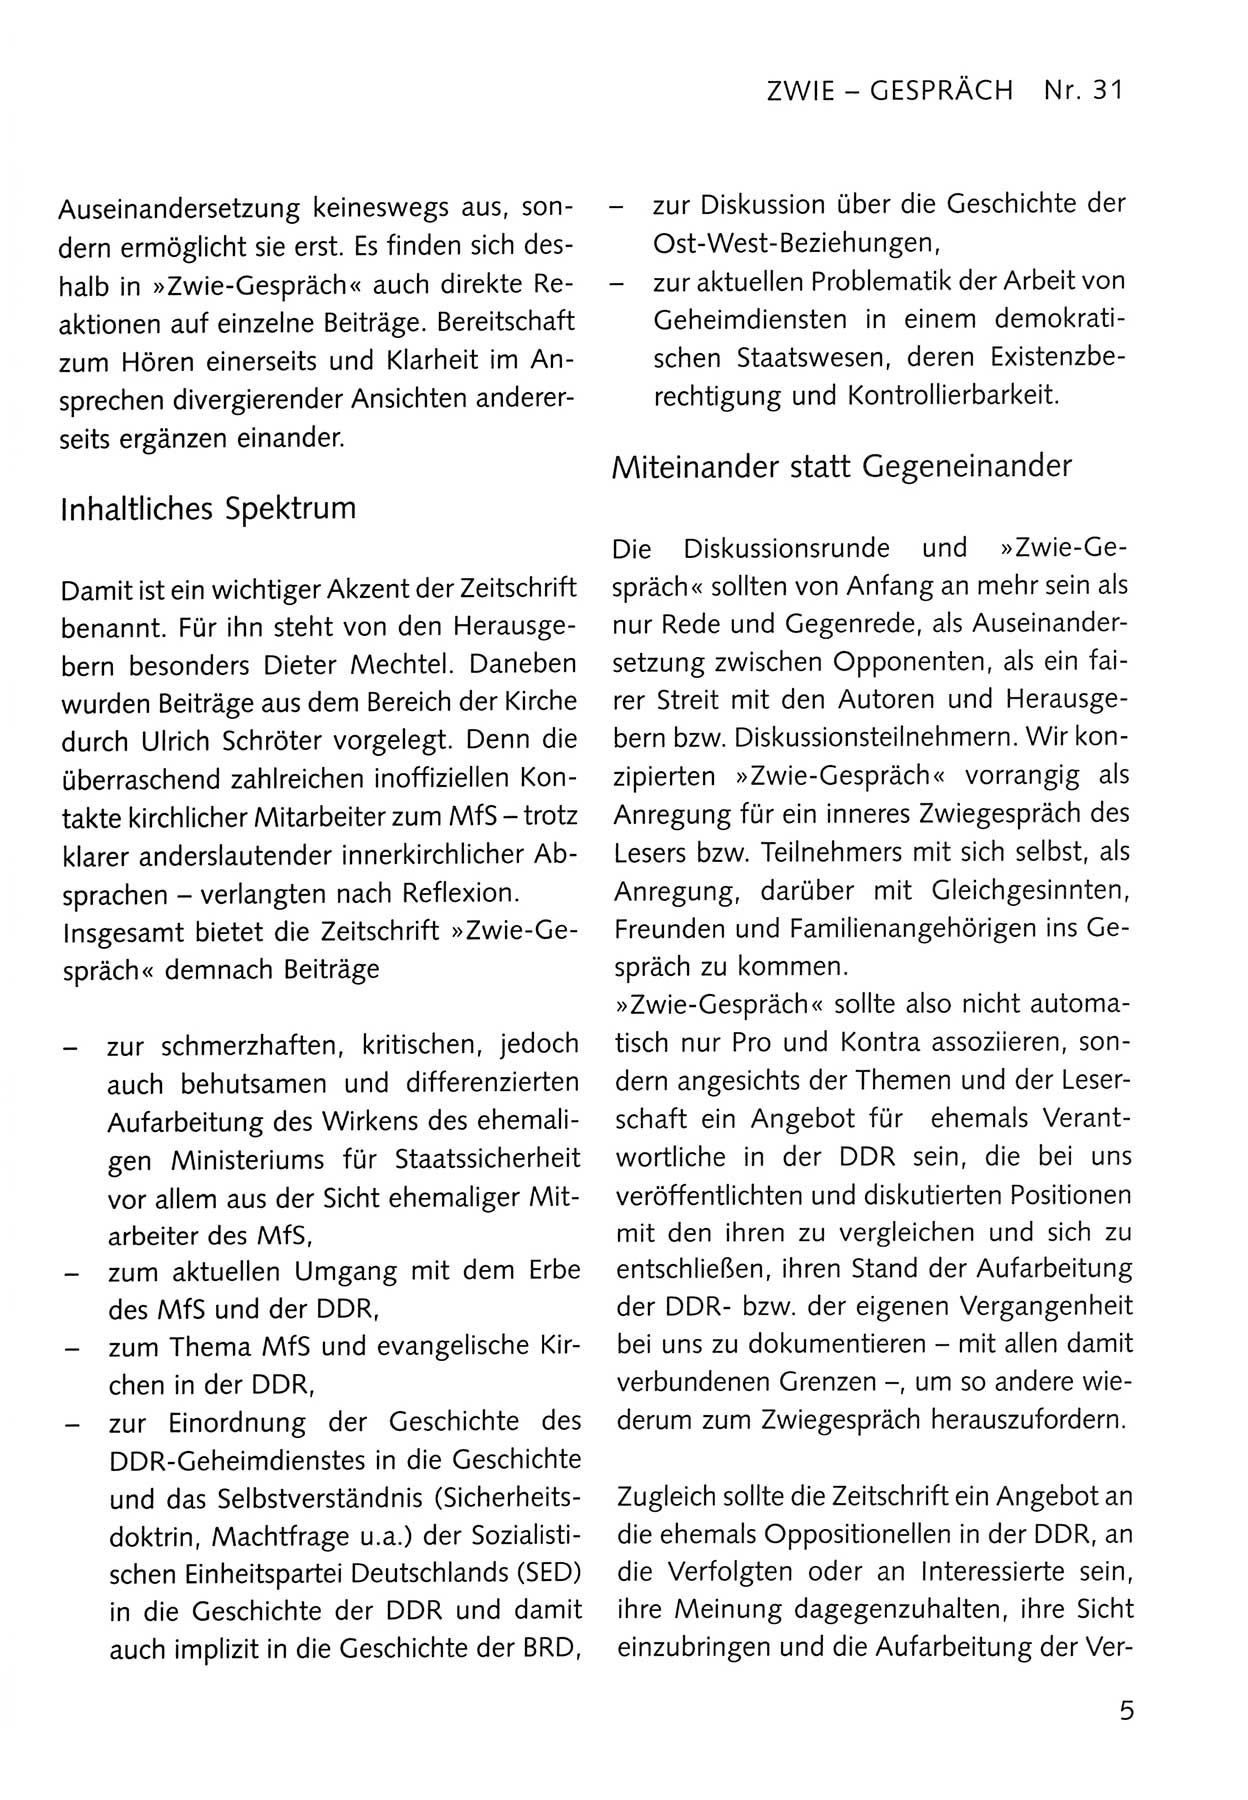 Zwie-Gespräch, Beiträge zum Umgang mit der Staatssicherheits-Vergangenheit [Deutsche Demokratische Republik (DDR)], Ausgabe Nr. 31, Berlin 1995, Seite 5 (Zwie-Gespr. Ausg. 31 1995, S. 5)